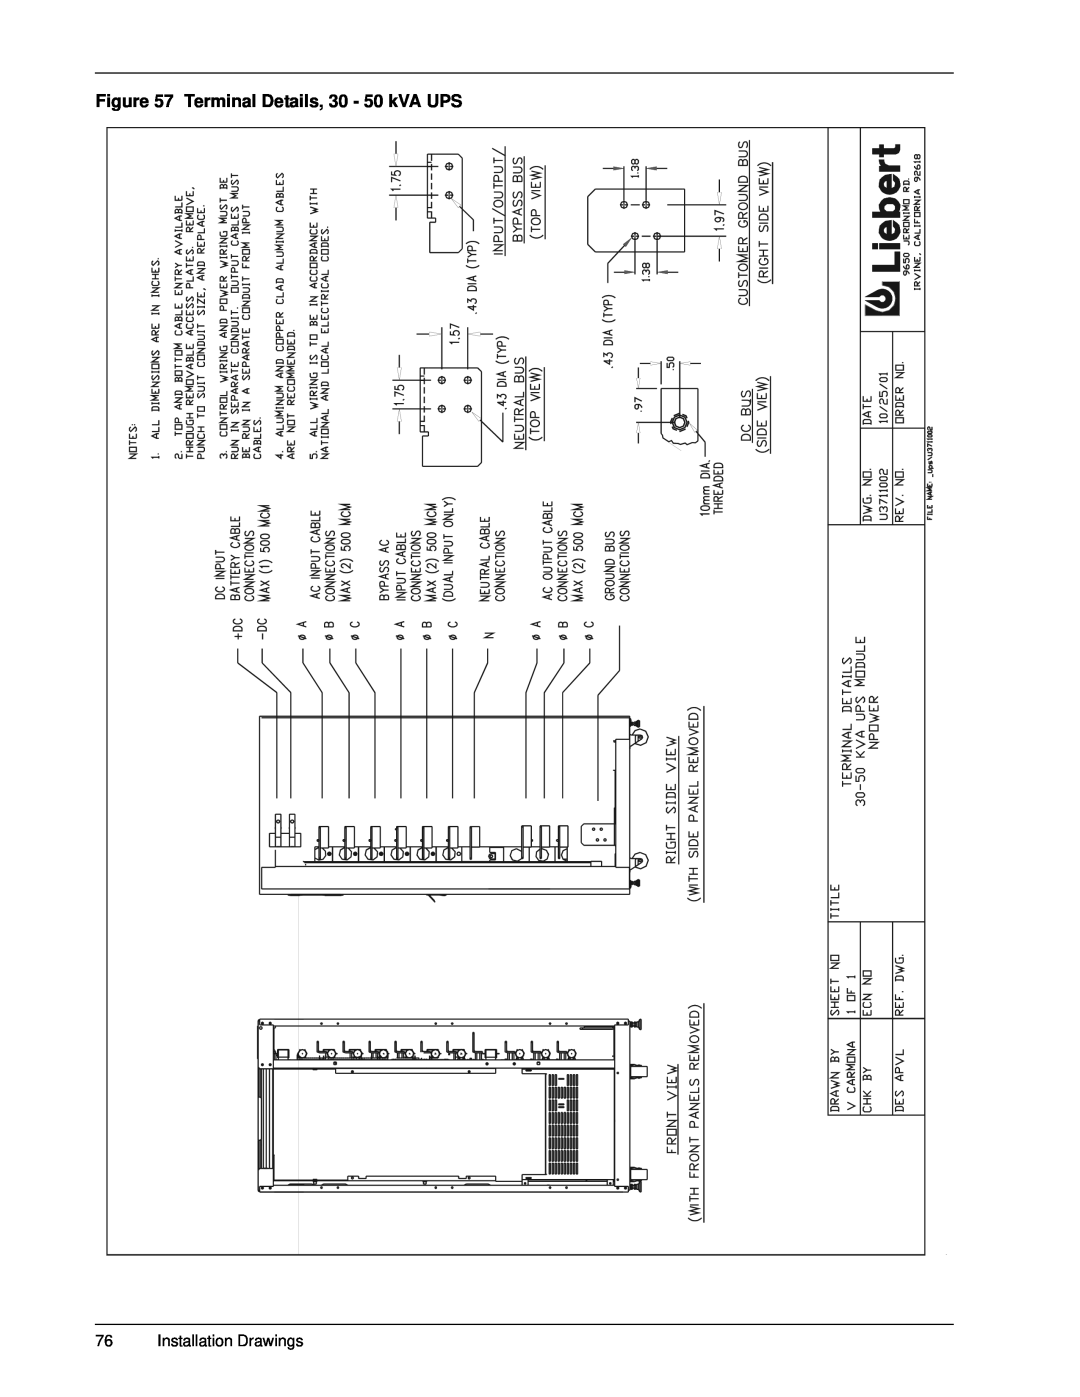 Emerson 30-130 kVA installation manual Terminal Details, 30 - 50 kVA UPS, Installation Drawings 